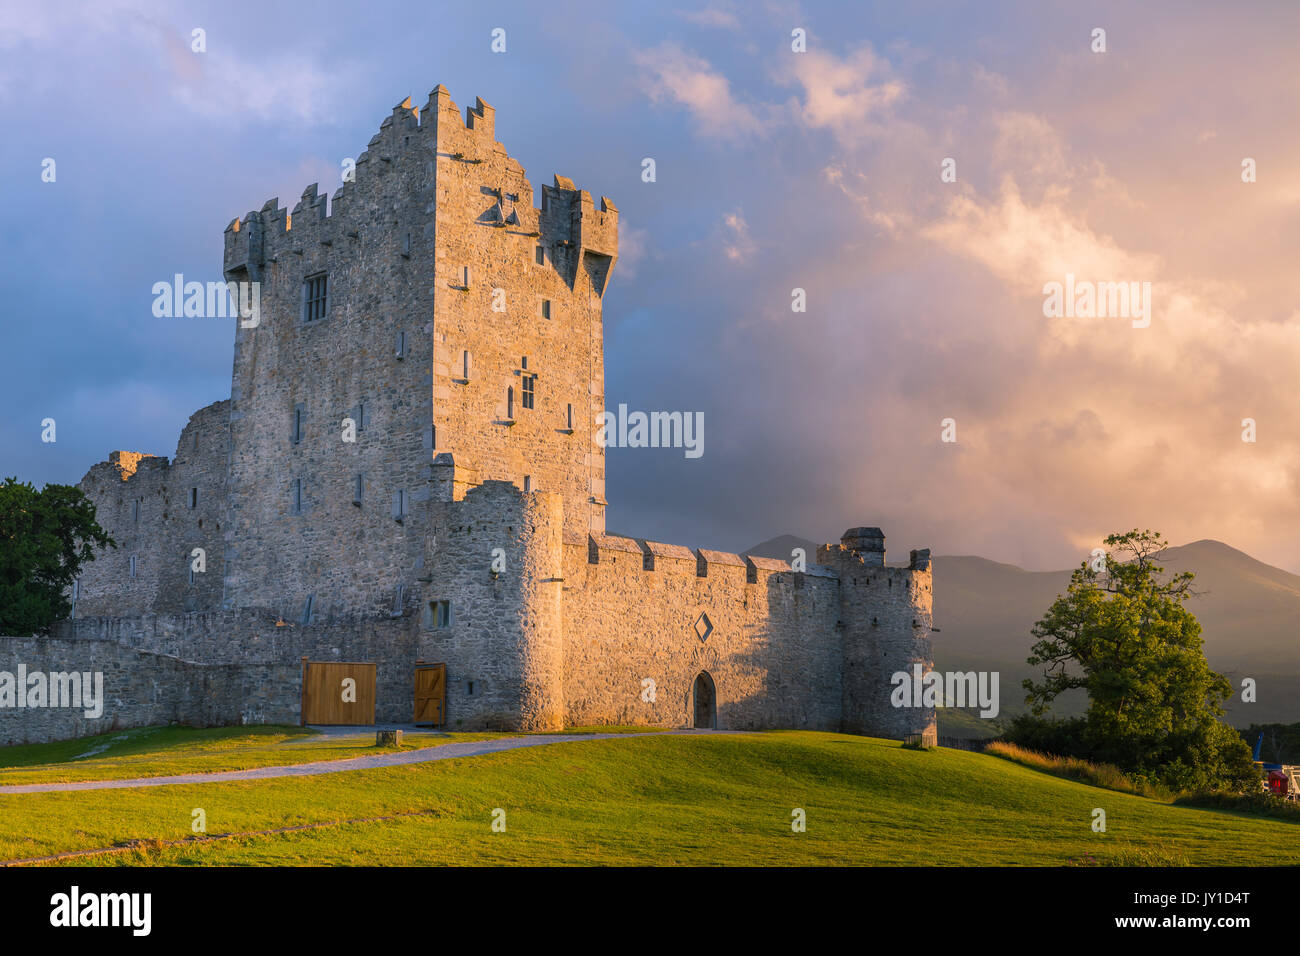 Le Château de Ross est une tour du Xvème siècle maison et garder sur le bord de Lough Leane, dans le Parc National de Killarney, comté de Kerry, Irlande. Banque D'Images